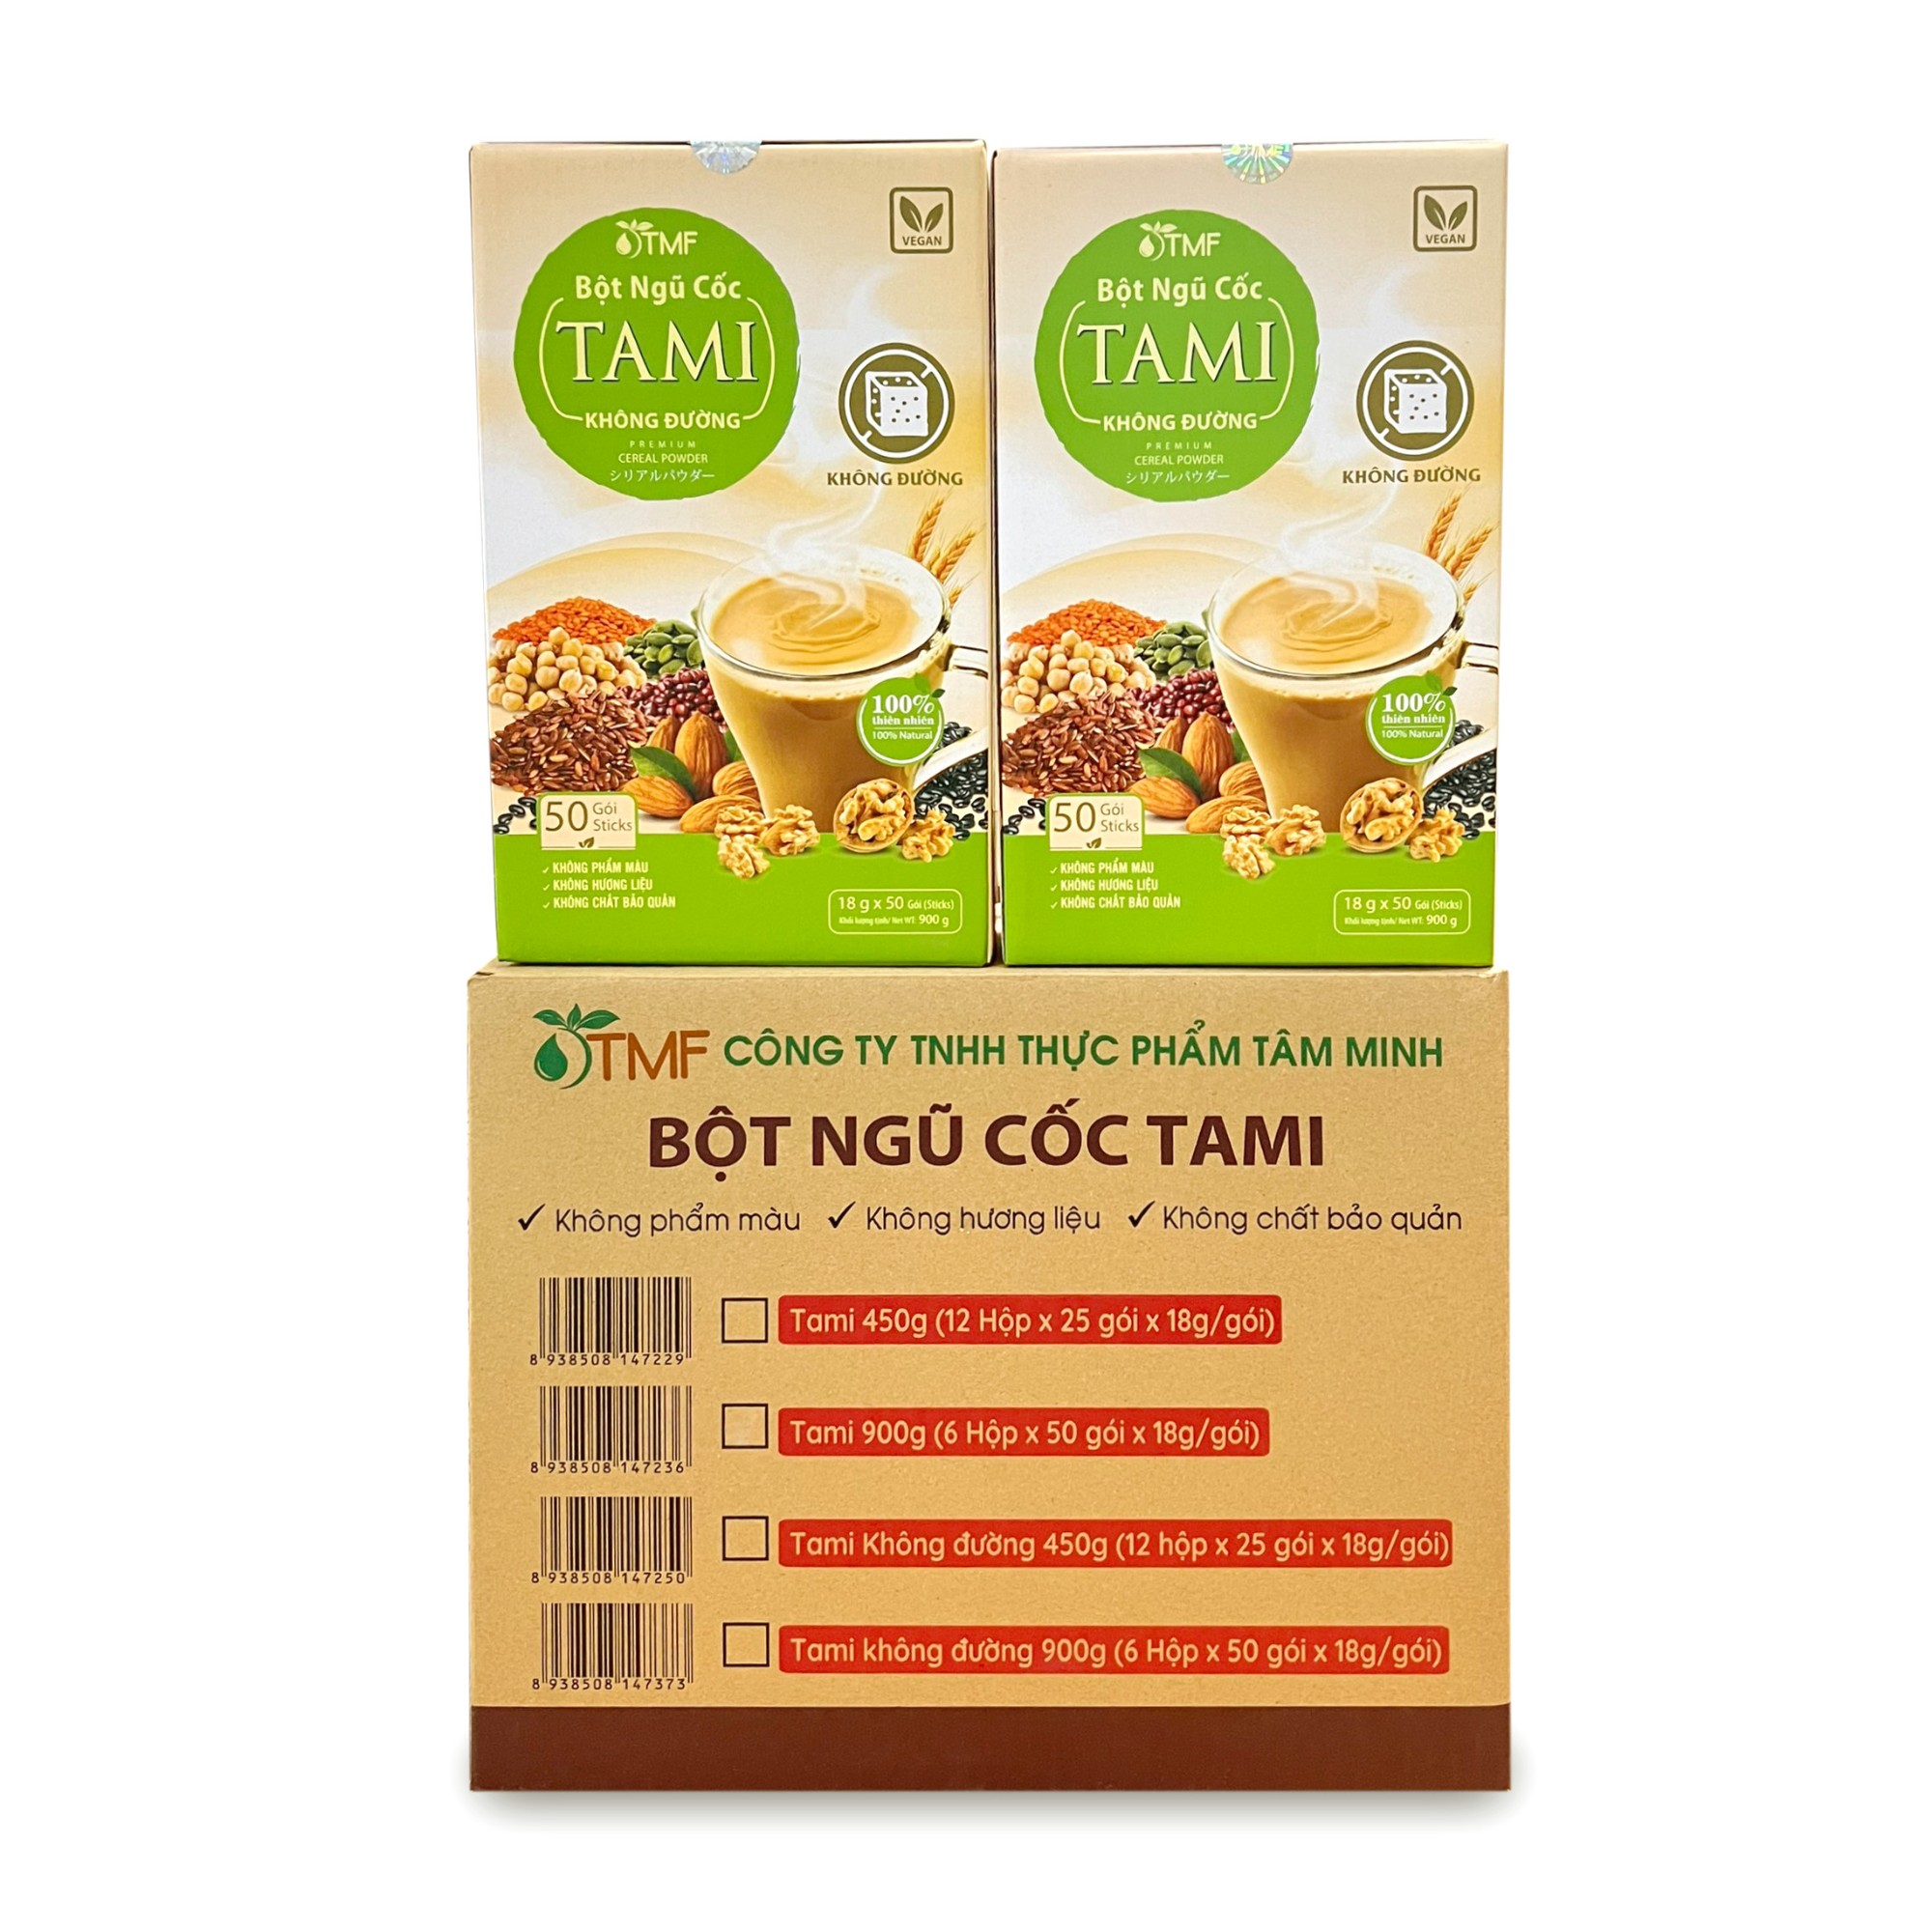 6 BOXES OF TAMI MIX GRAIN POWDER NO SUGAR 900G